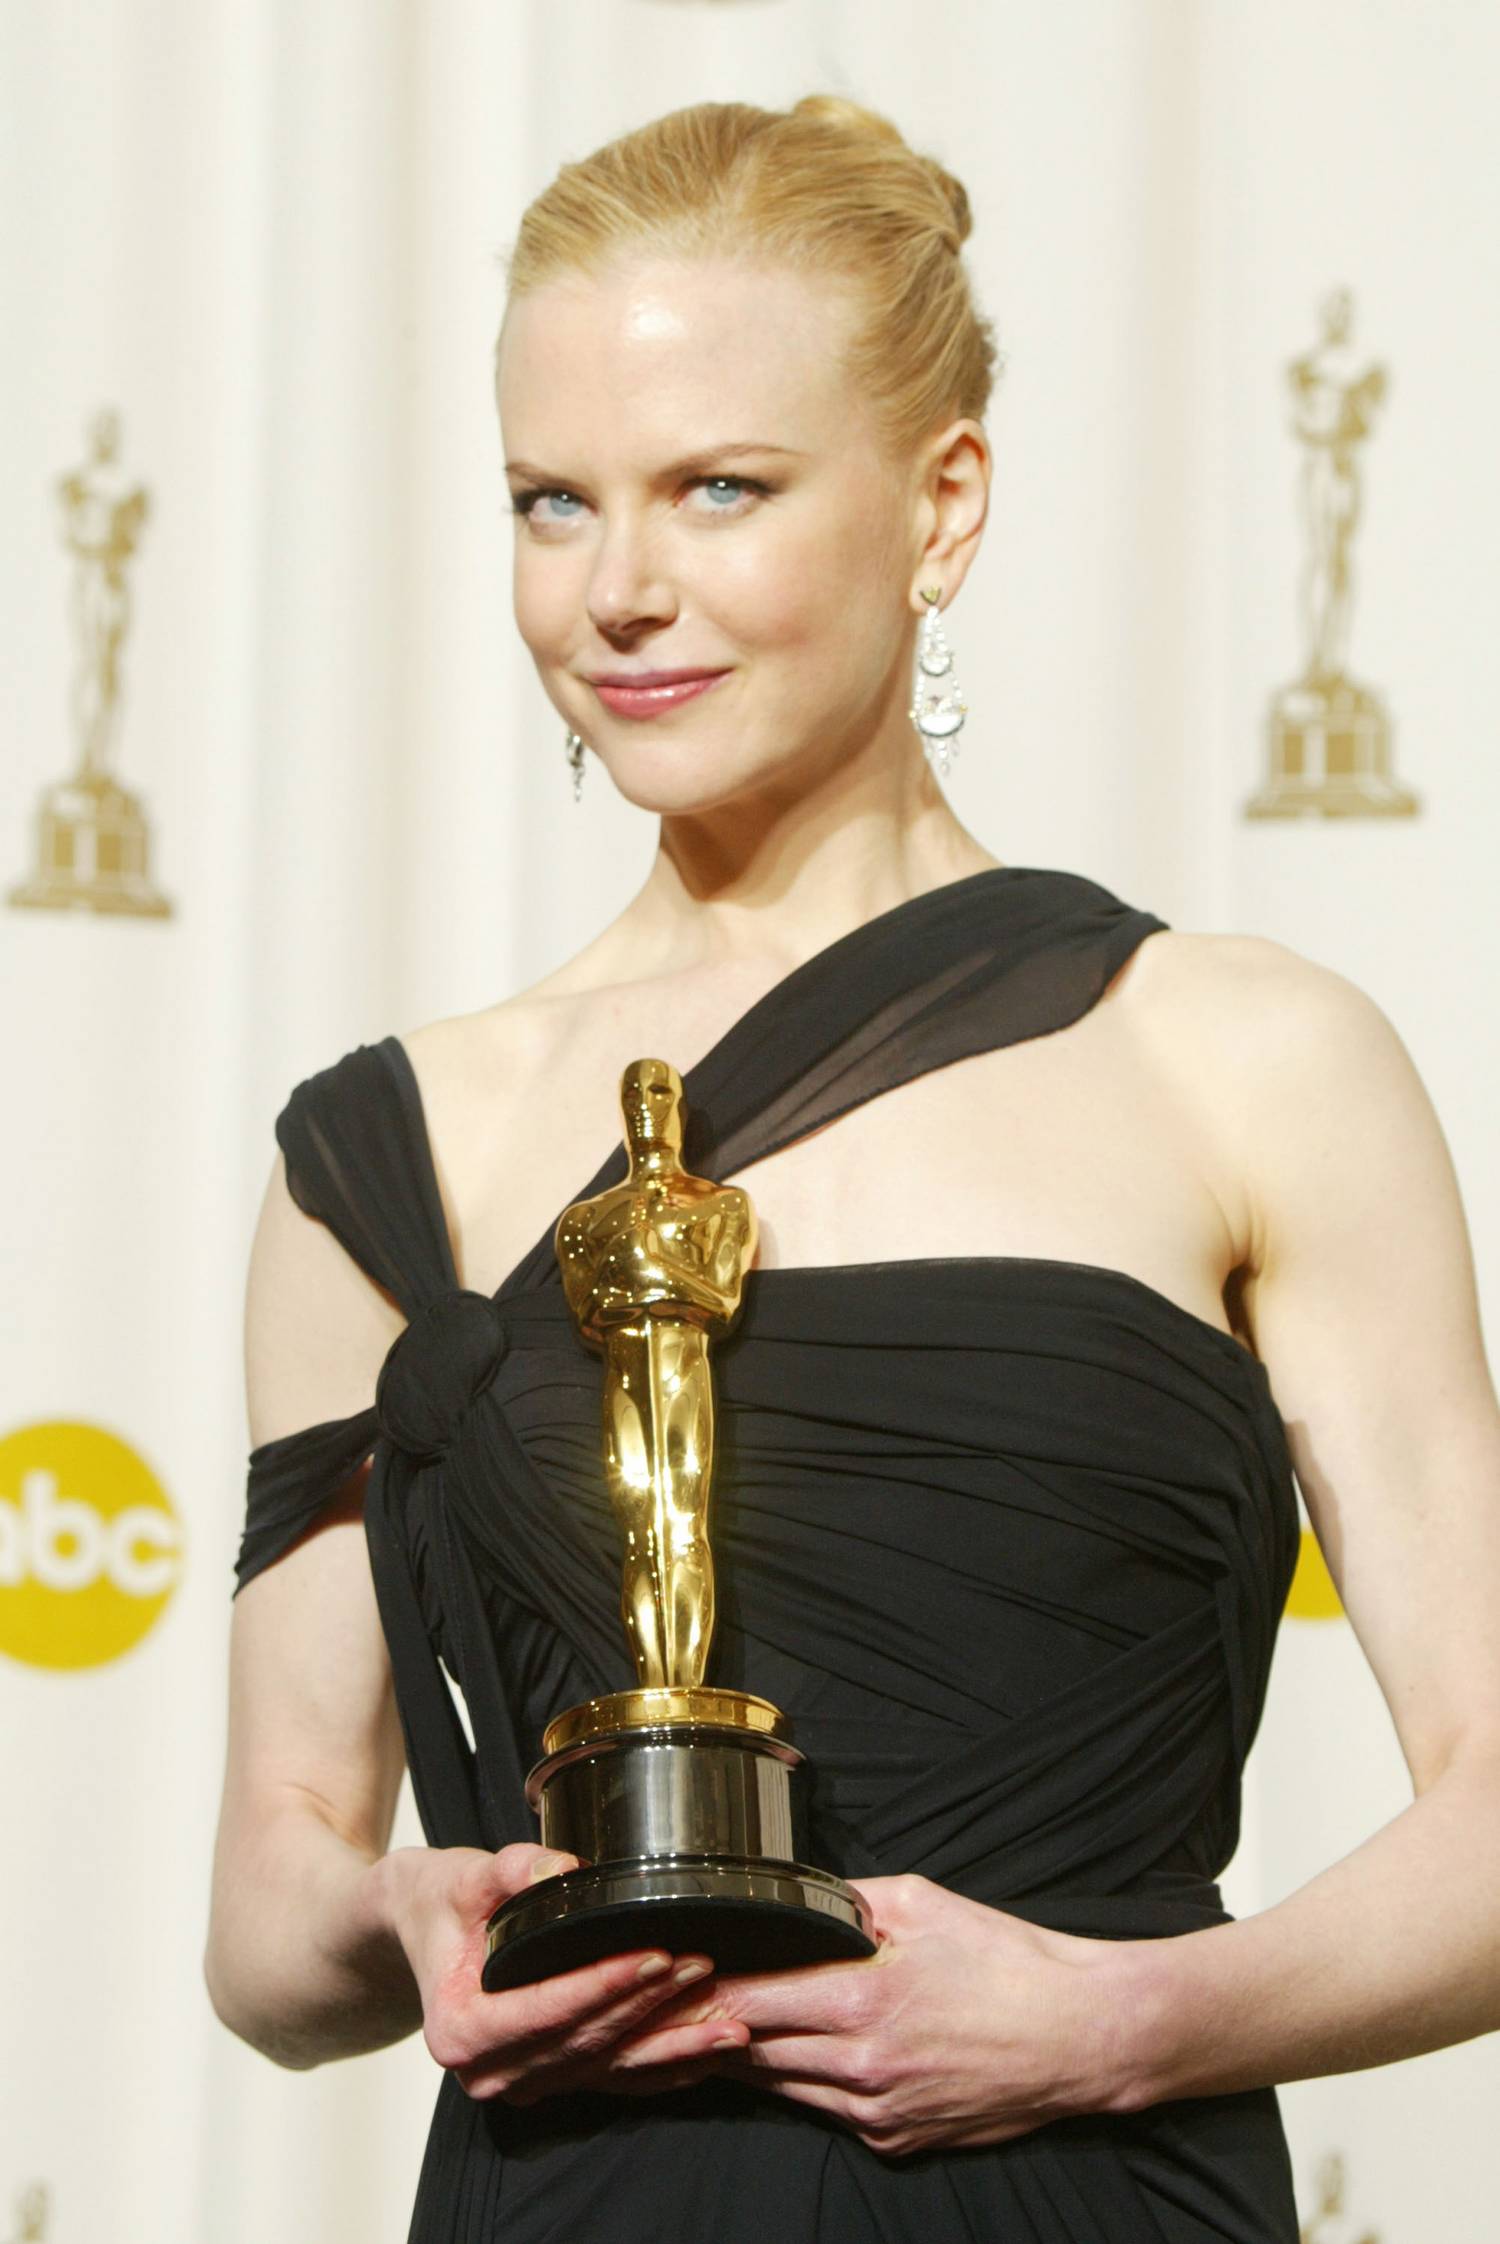 Nicole Kidman még az Oscar-díjának sem tudott igazán örülni, mert hiányzott az életéből a nagybetűs szerelem.